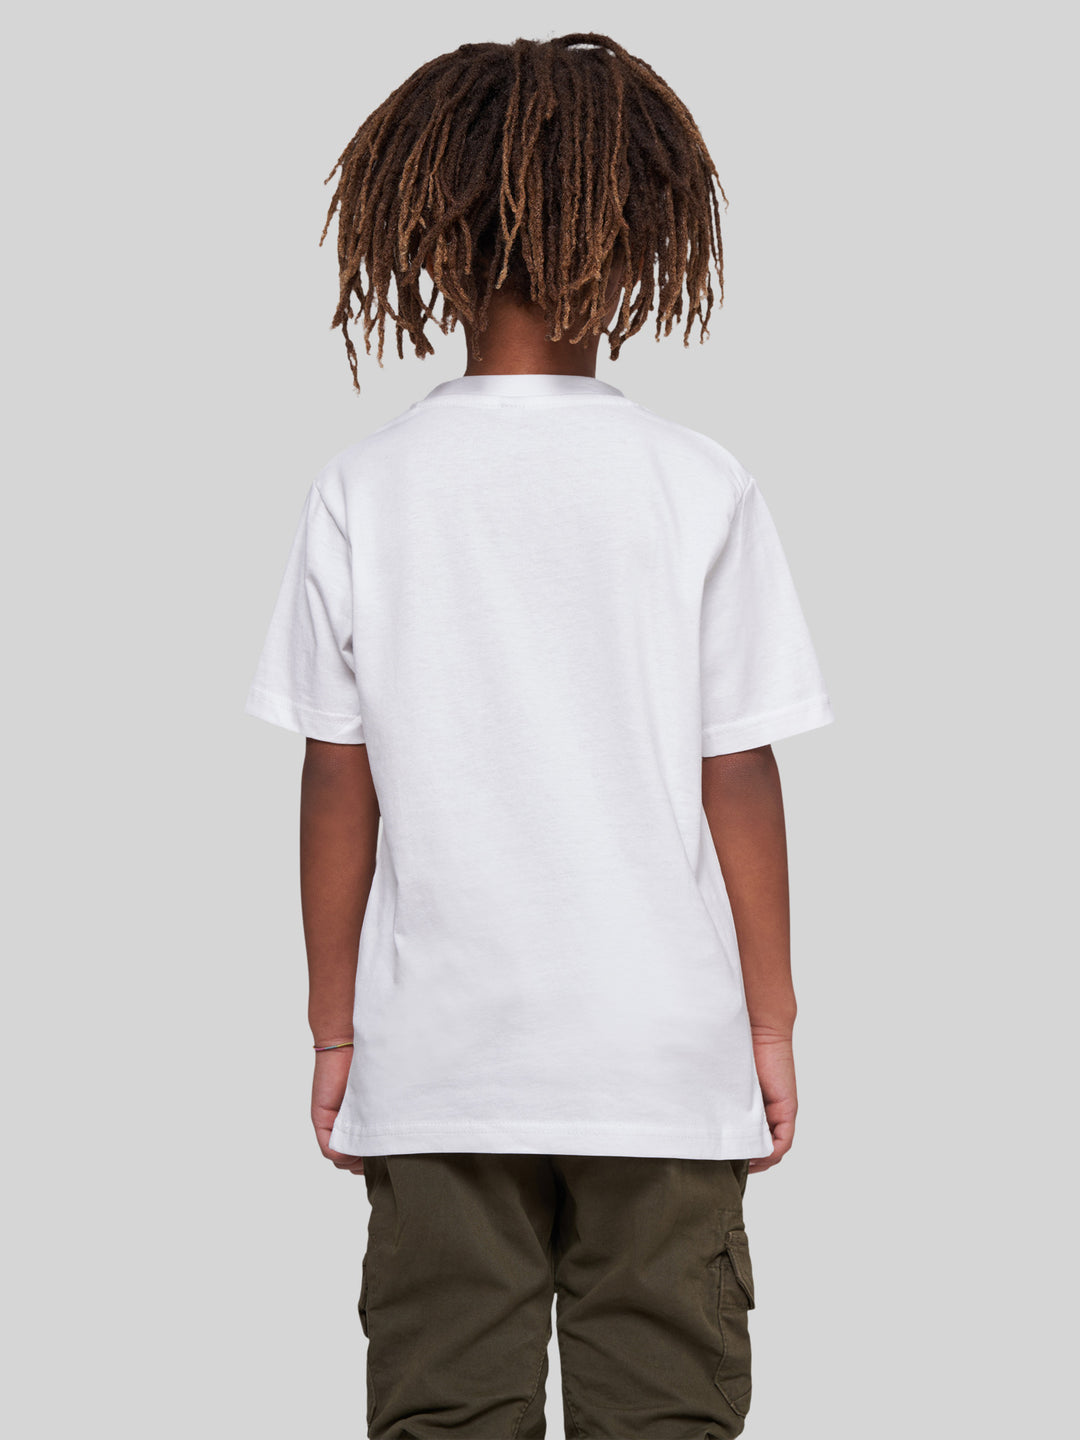 FINN | Kids T-Shirt Eisbär